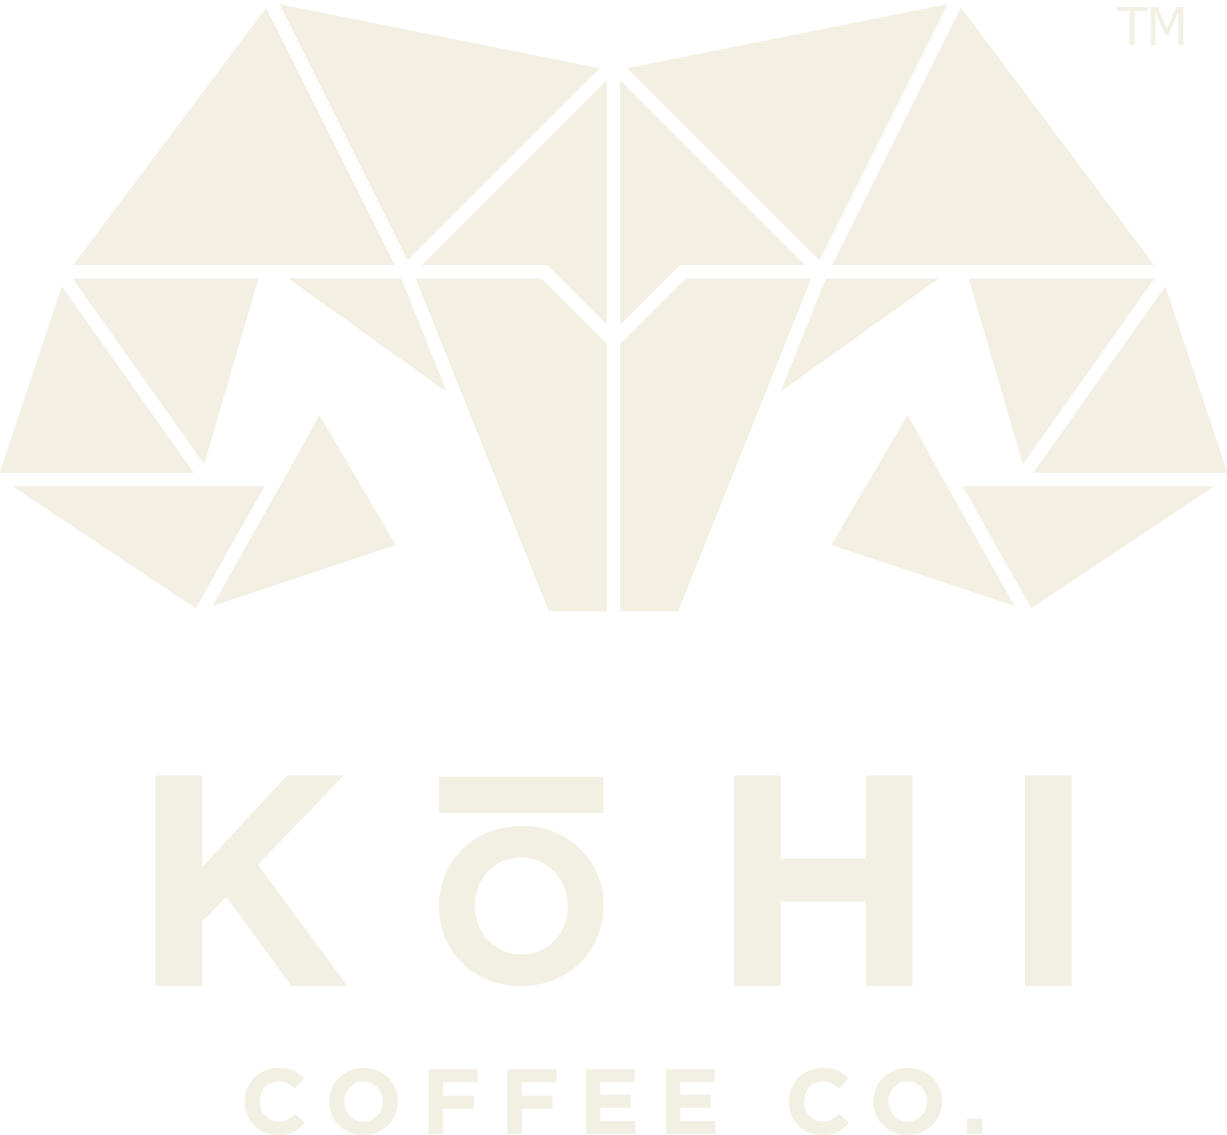 Kohi Coffee Company